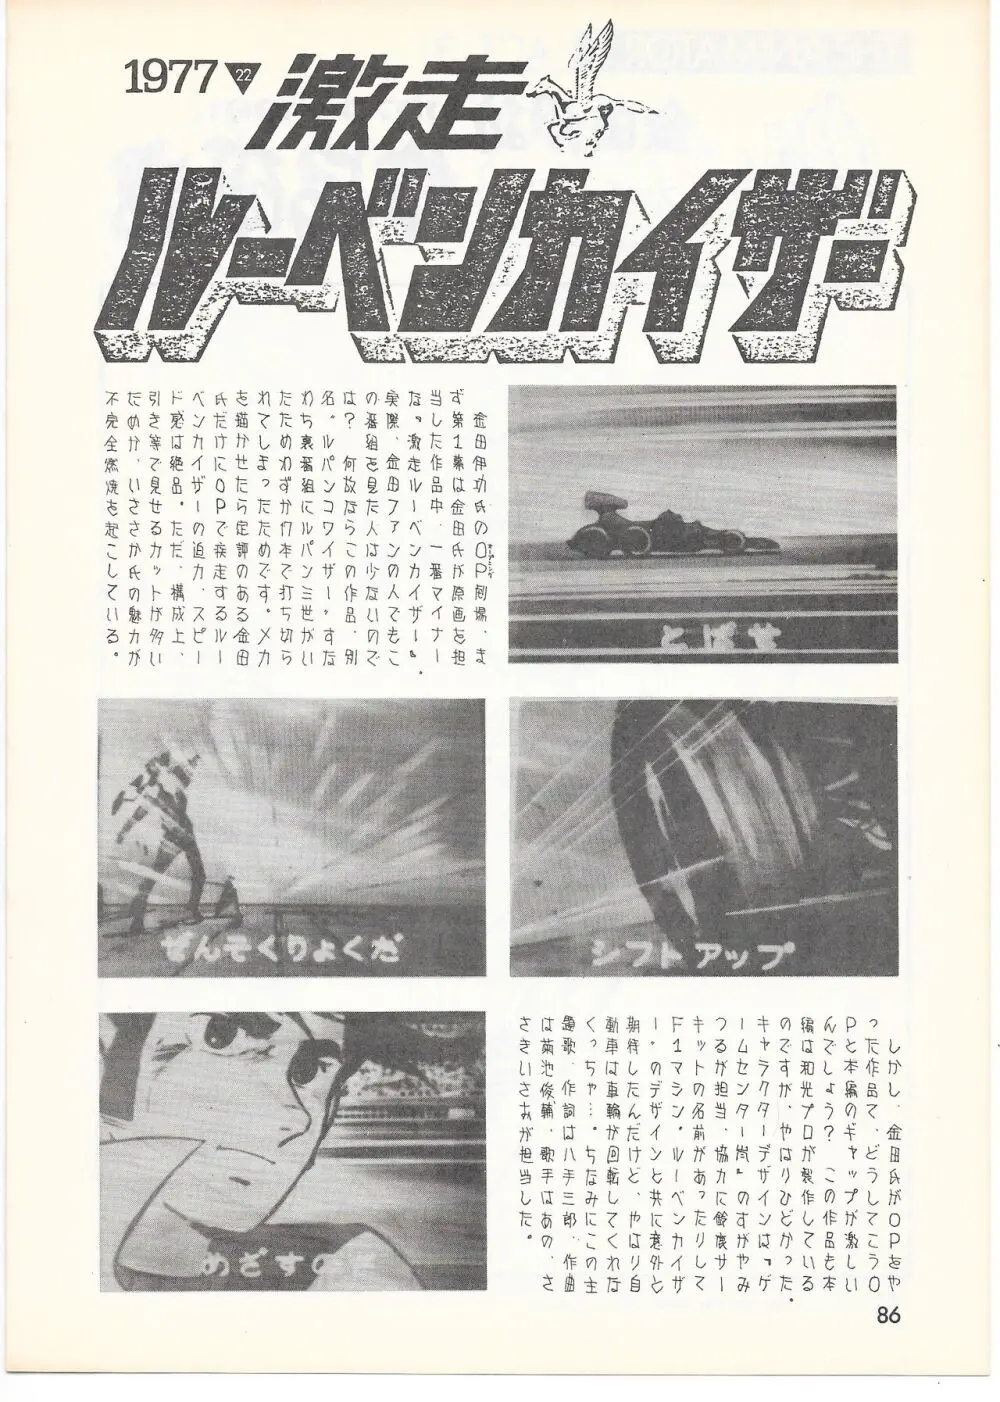 THE ANIMATOR 1 金田伊功特集号 83ページ